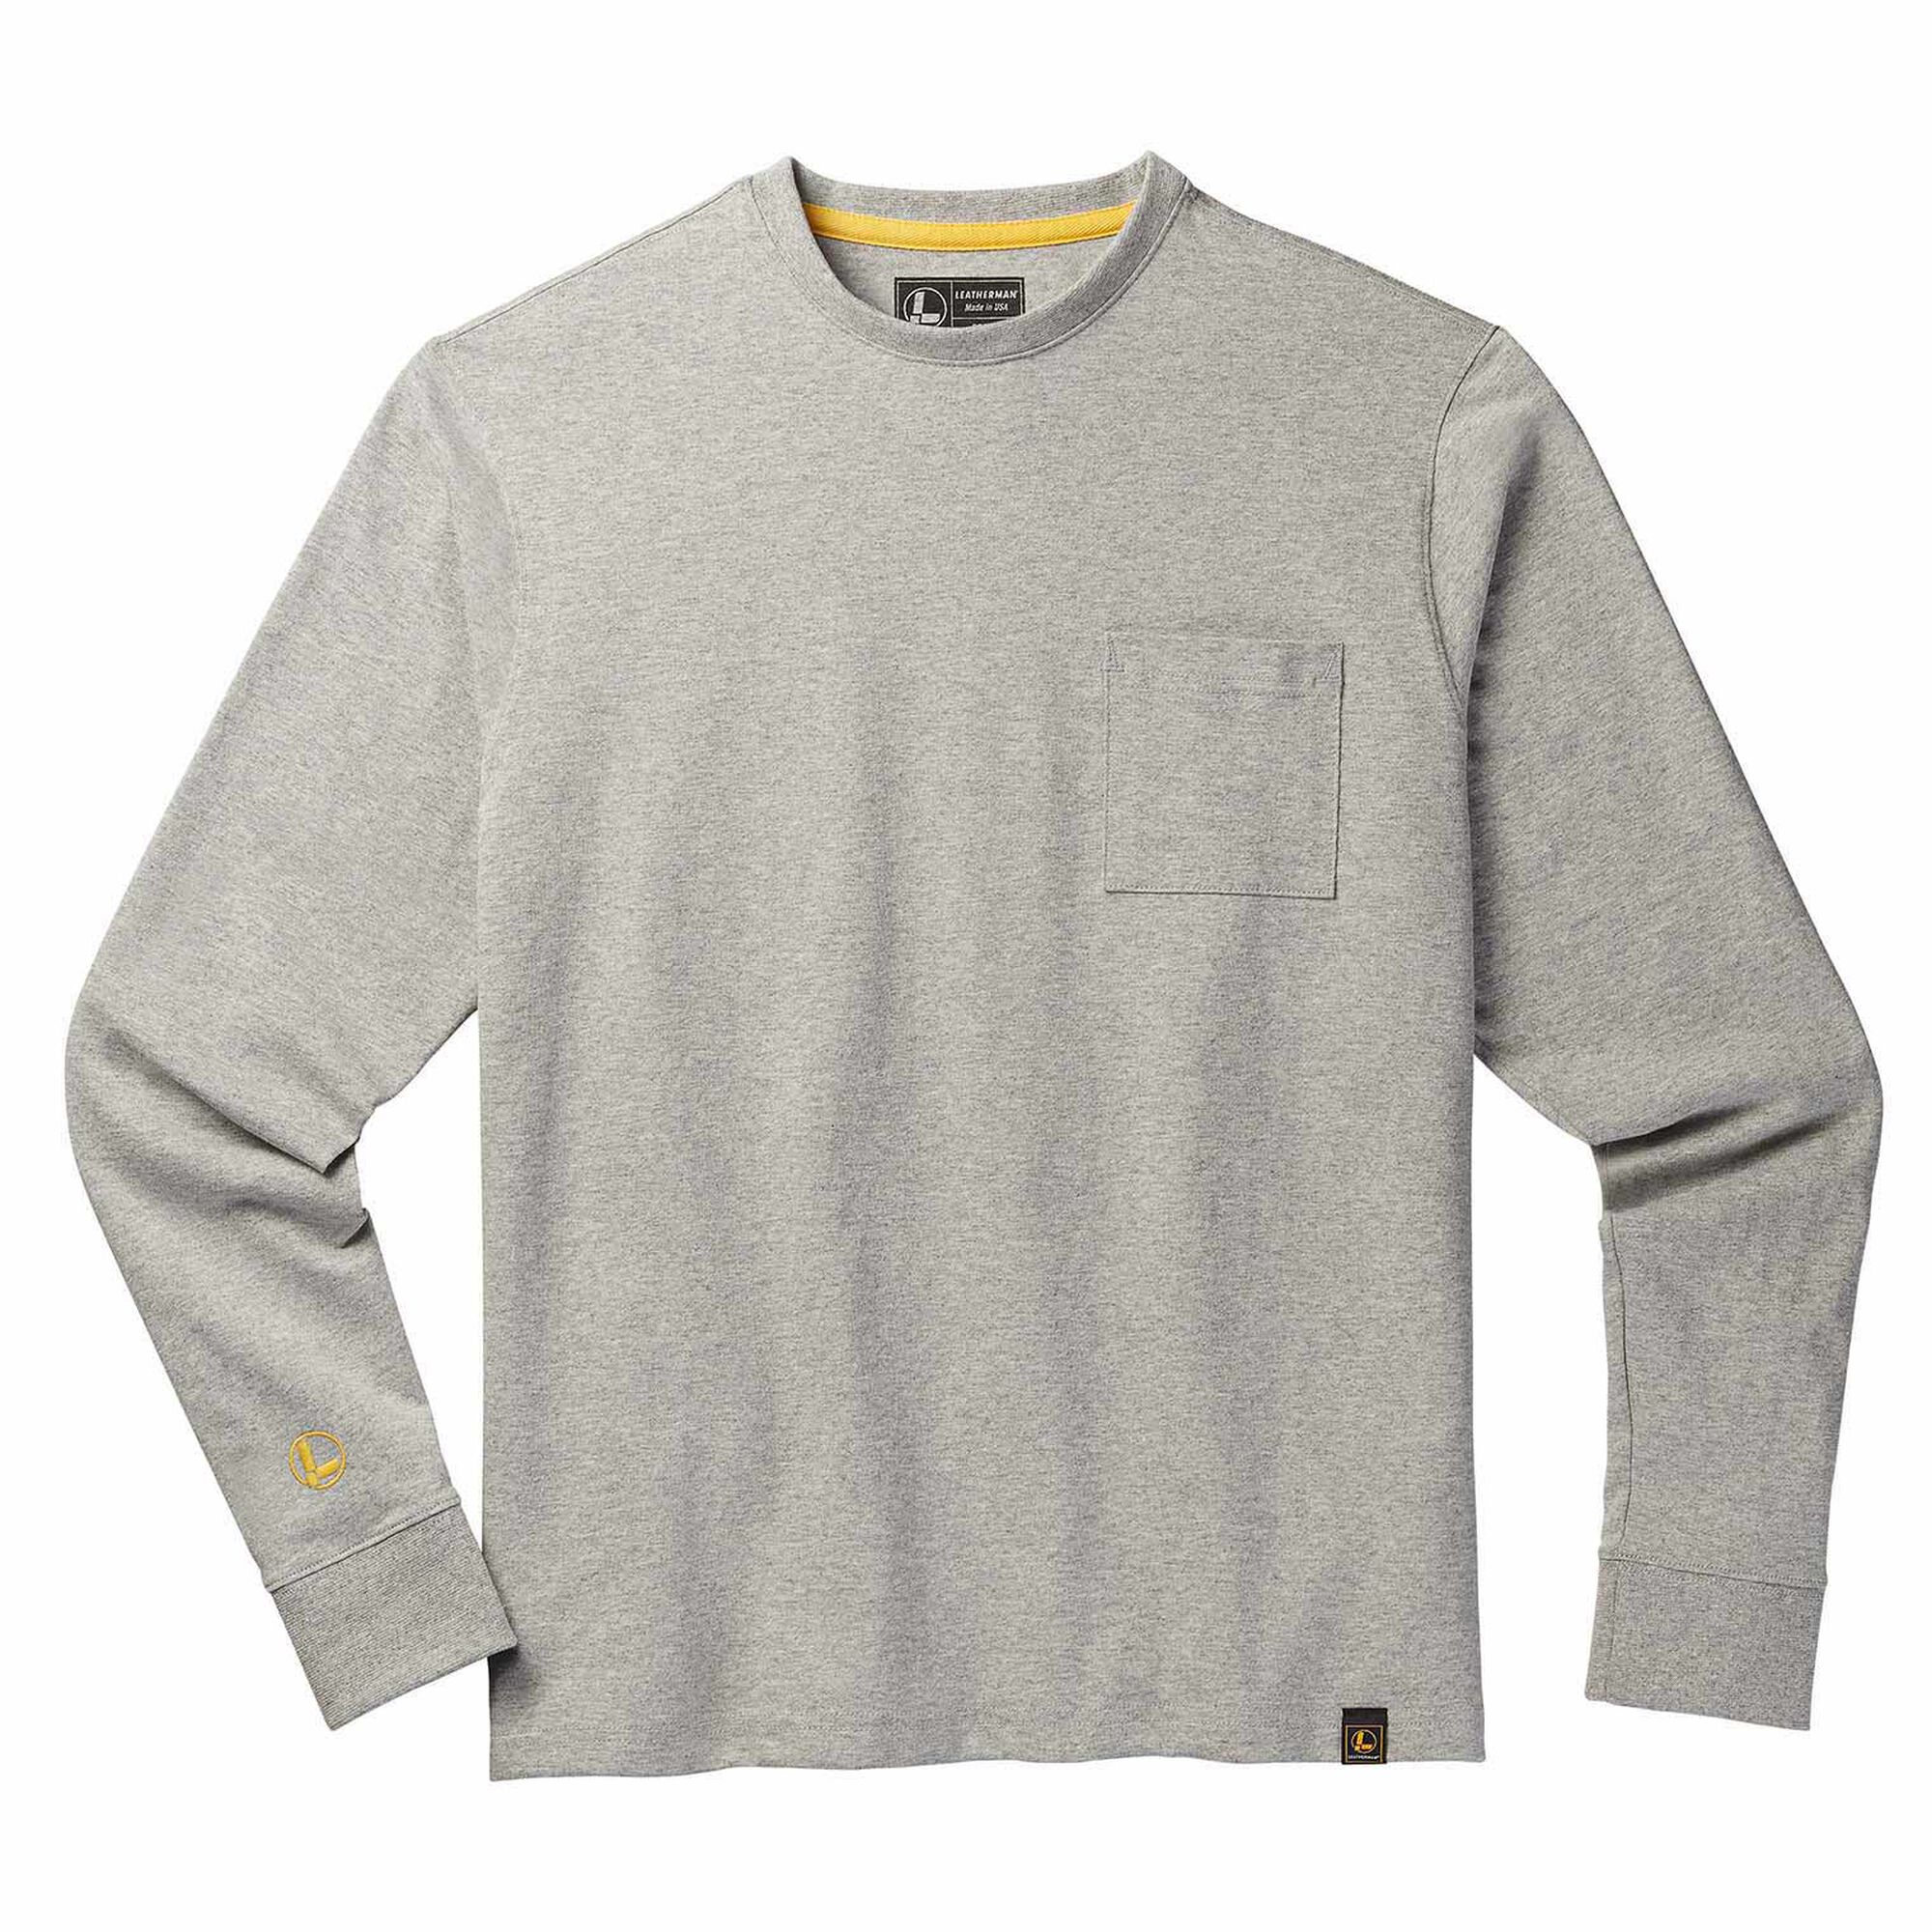 Redundante suizo Cilios Camiseta básica de manga larga de Leatherman | Apparel​​